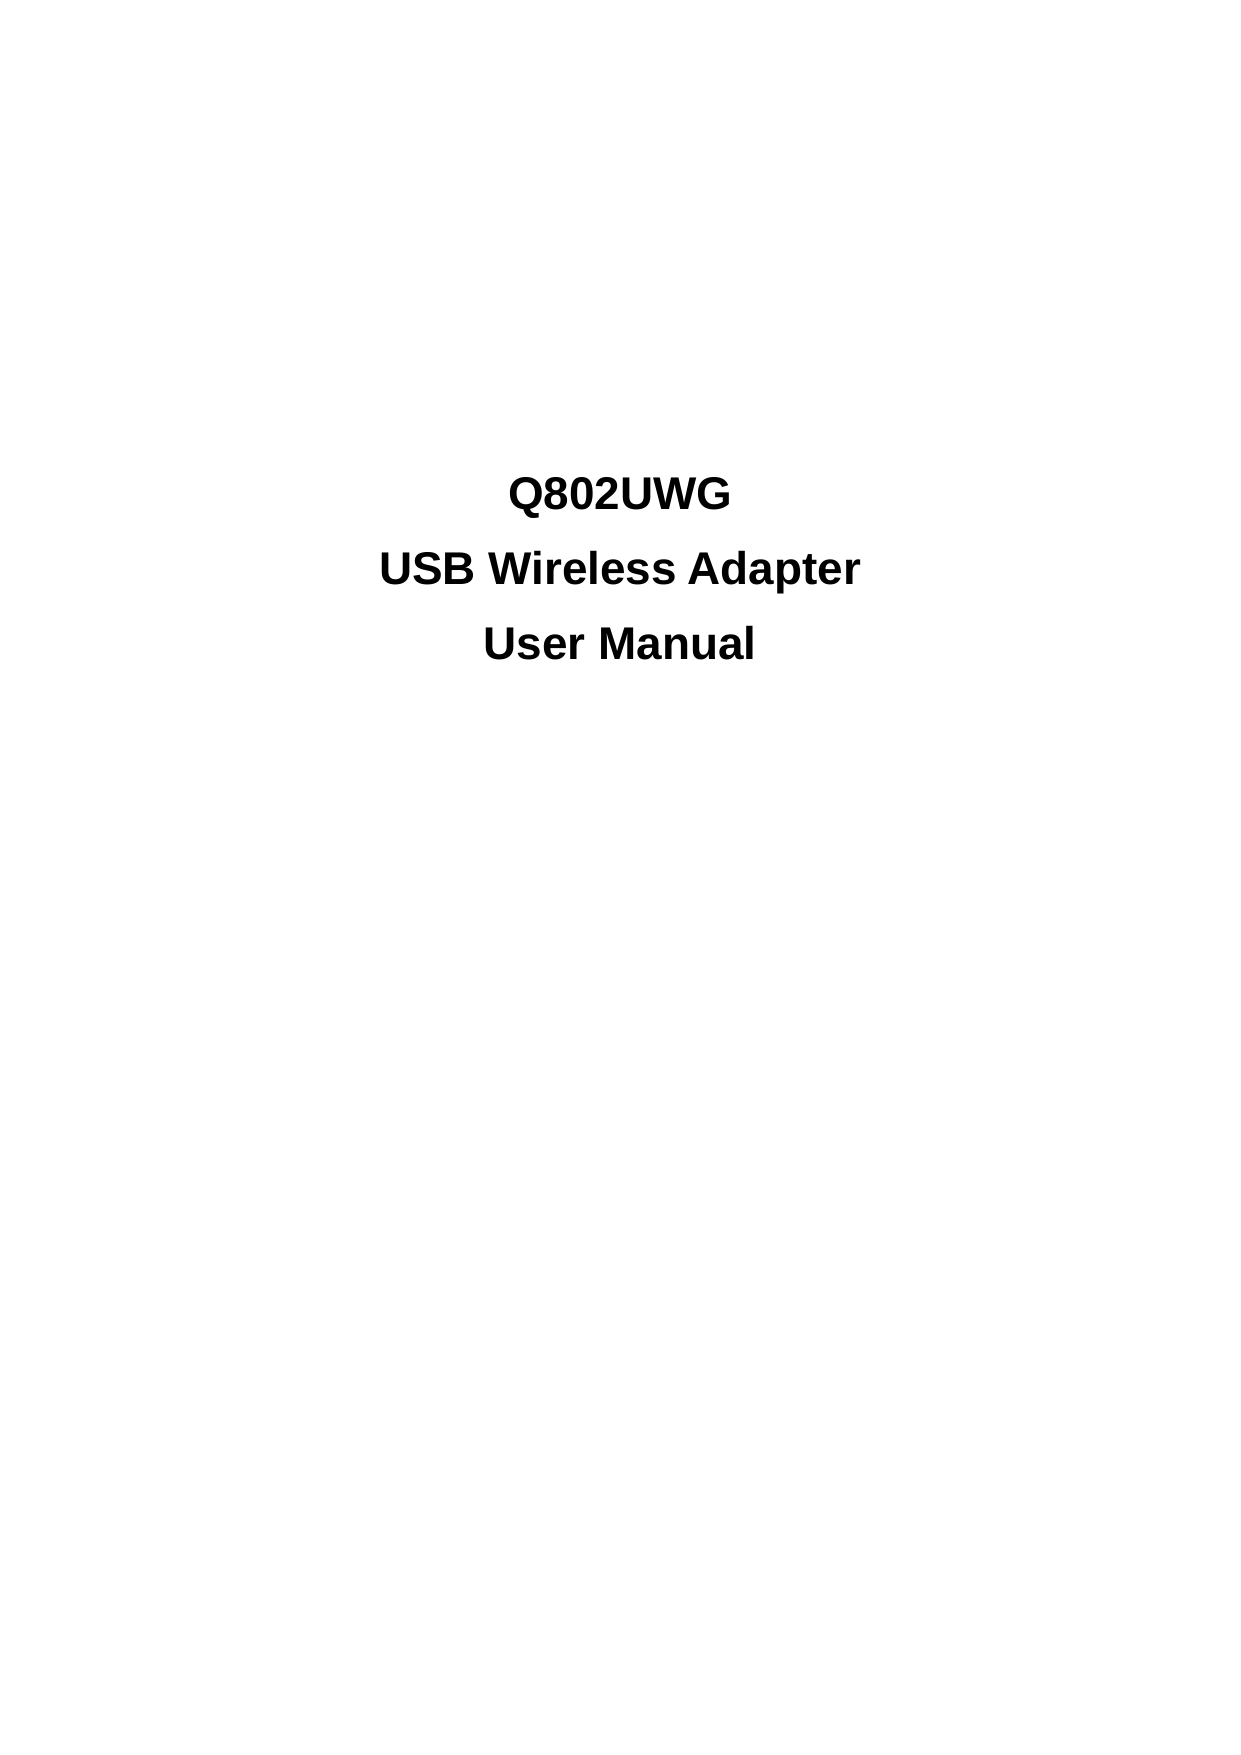          Q802UWG USB Wireless Adapter User Manual 